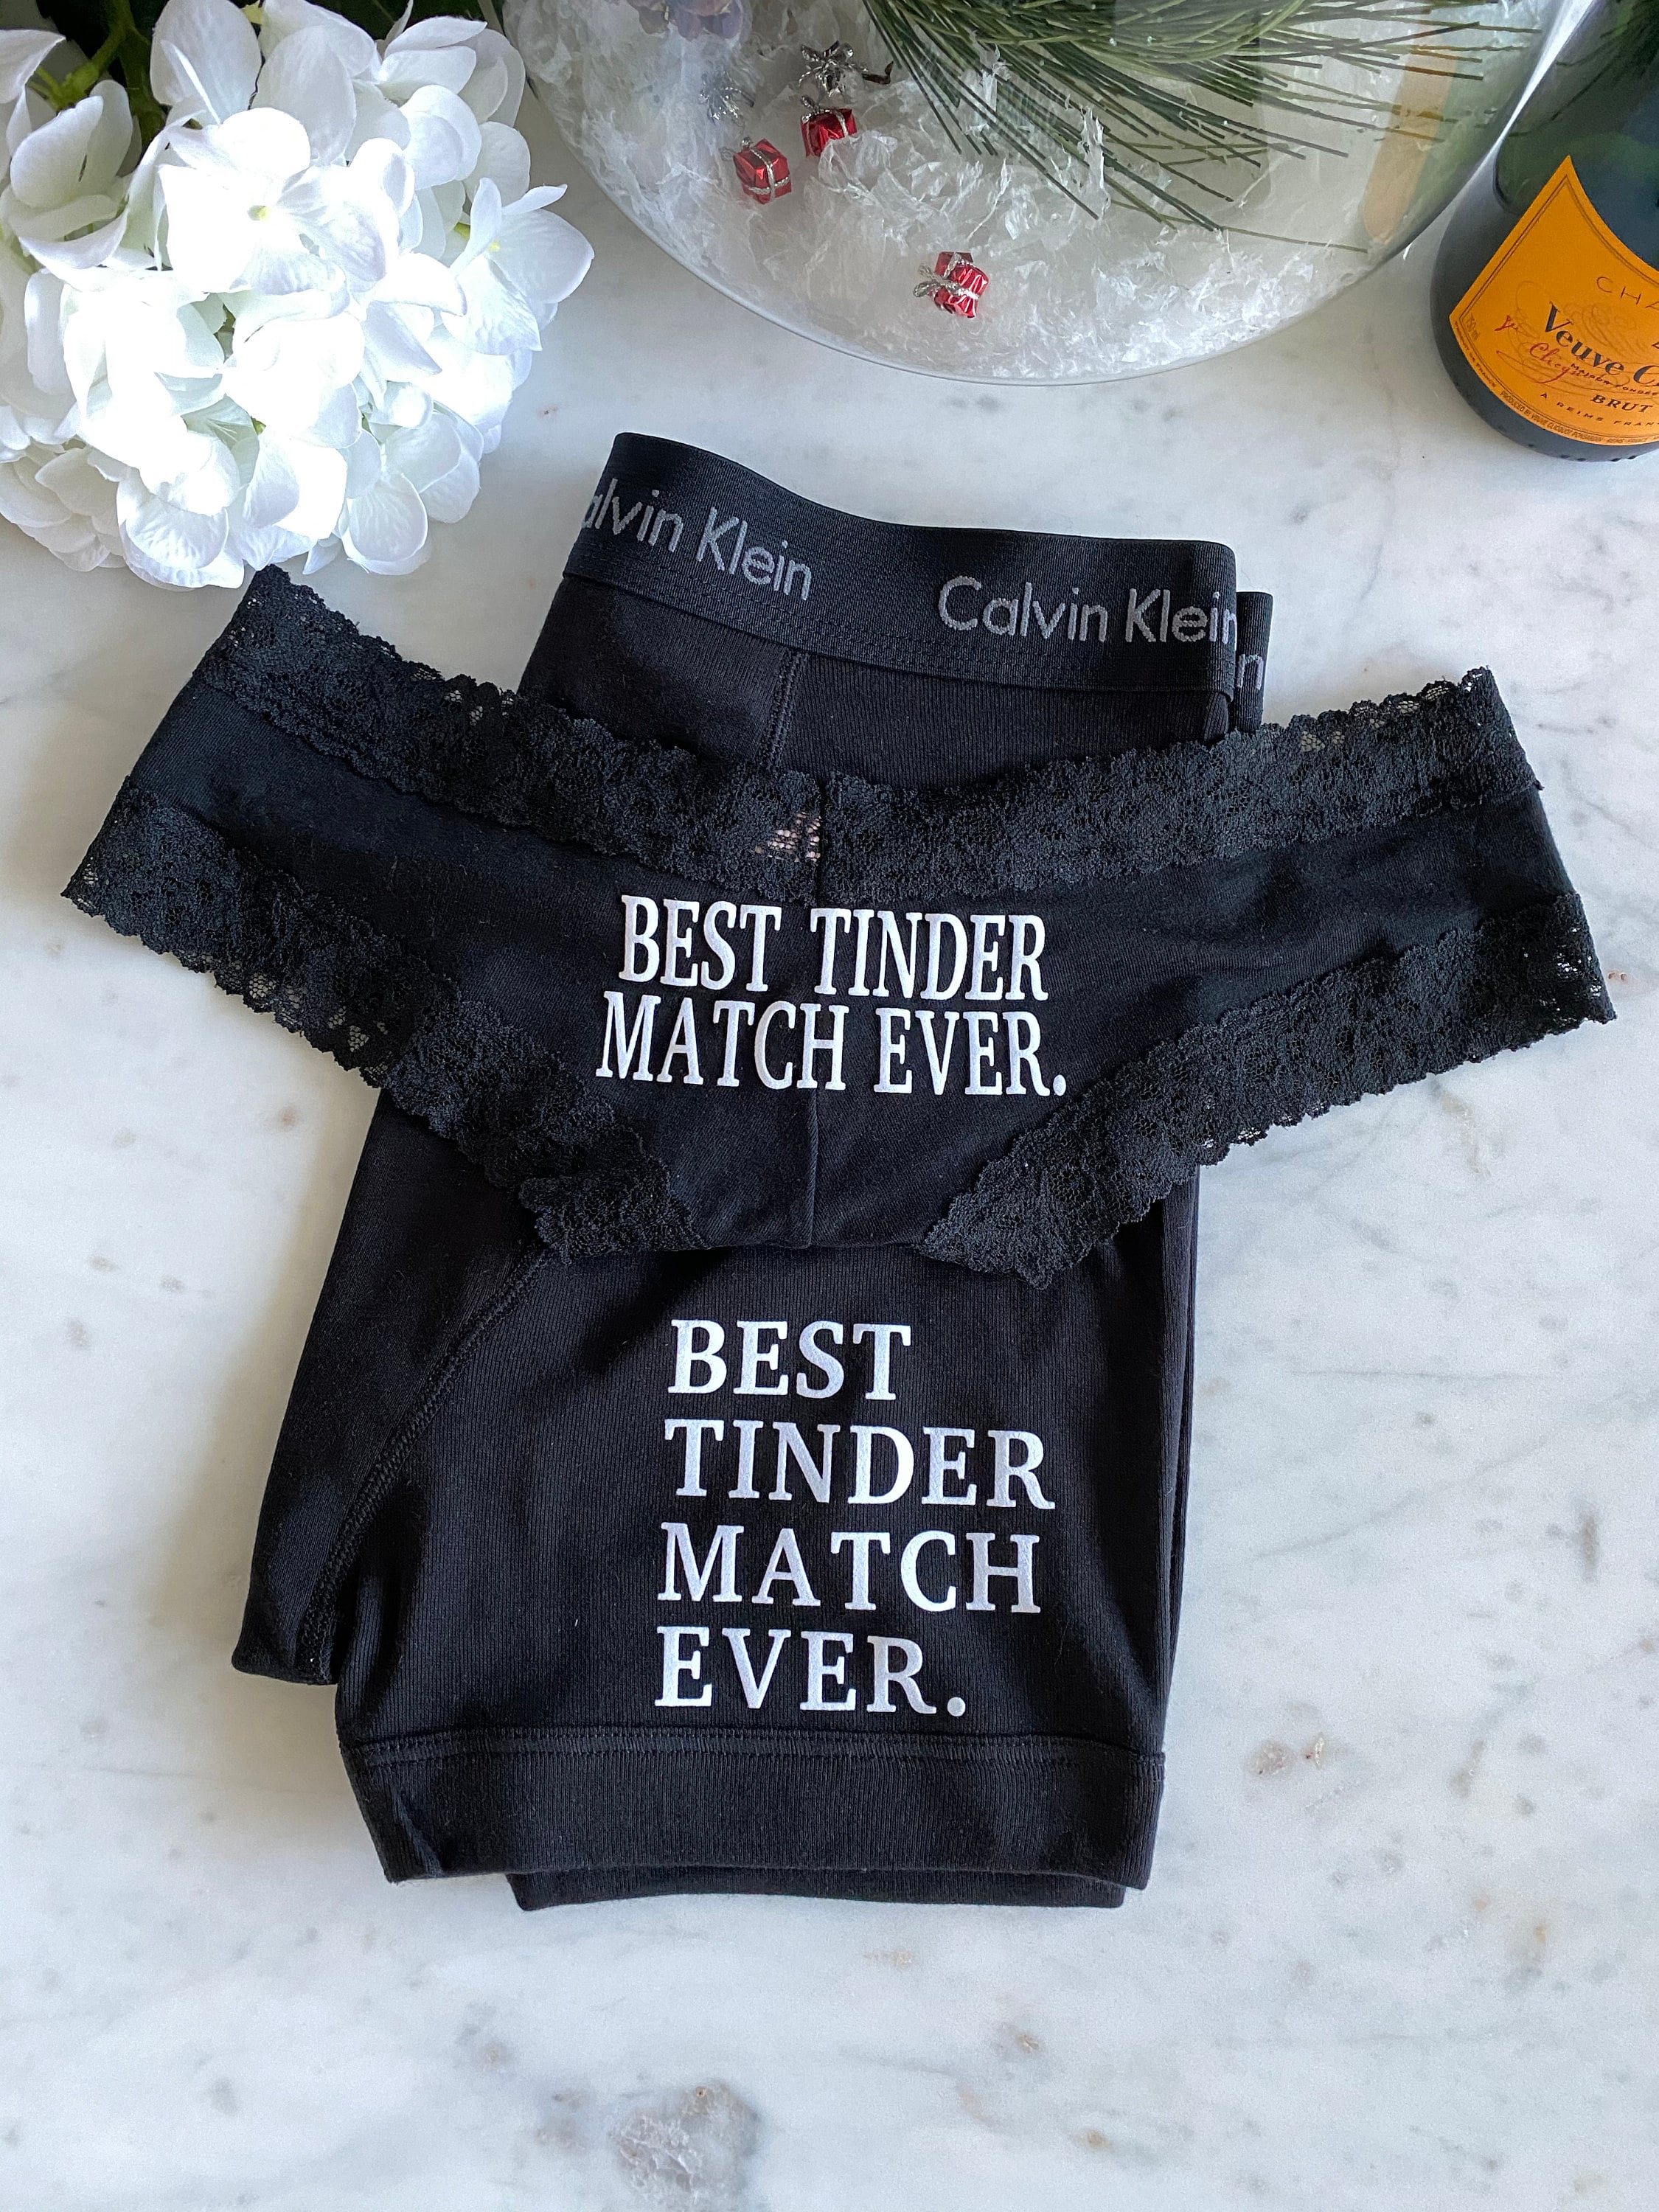 Calvin Klein Matching Underwear Cheapest Shop